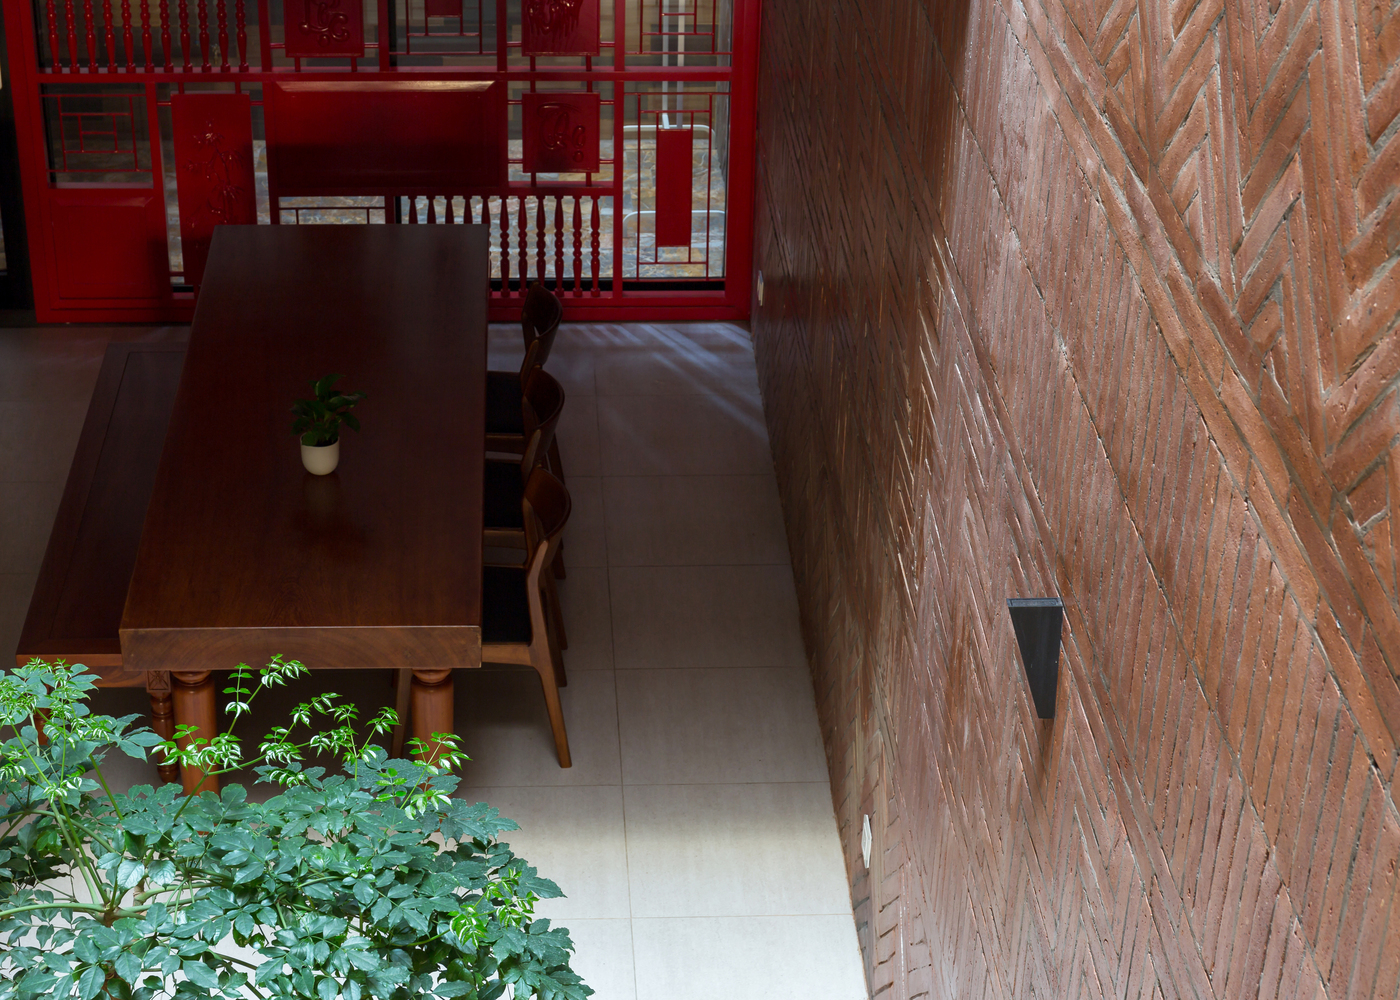 Thiết kế hiện đại kết hợp yếu tố truyền thống Bắc bộ của ngôi nhà 5 tầng ở Hà Nội - Ảnh 20